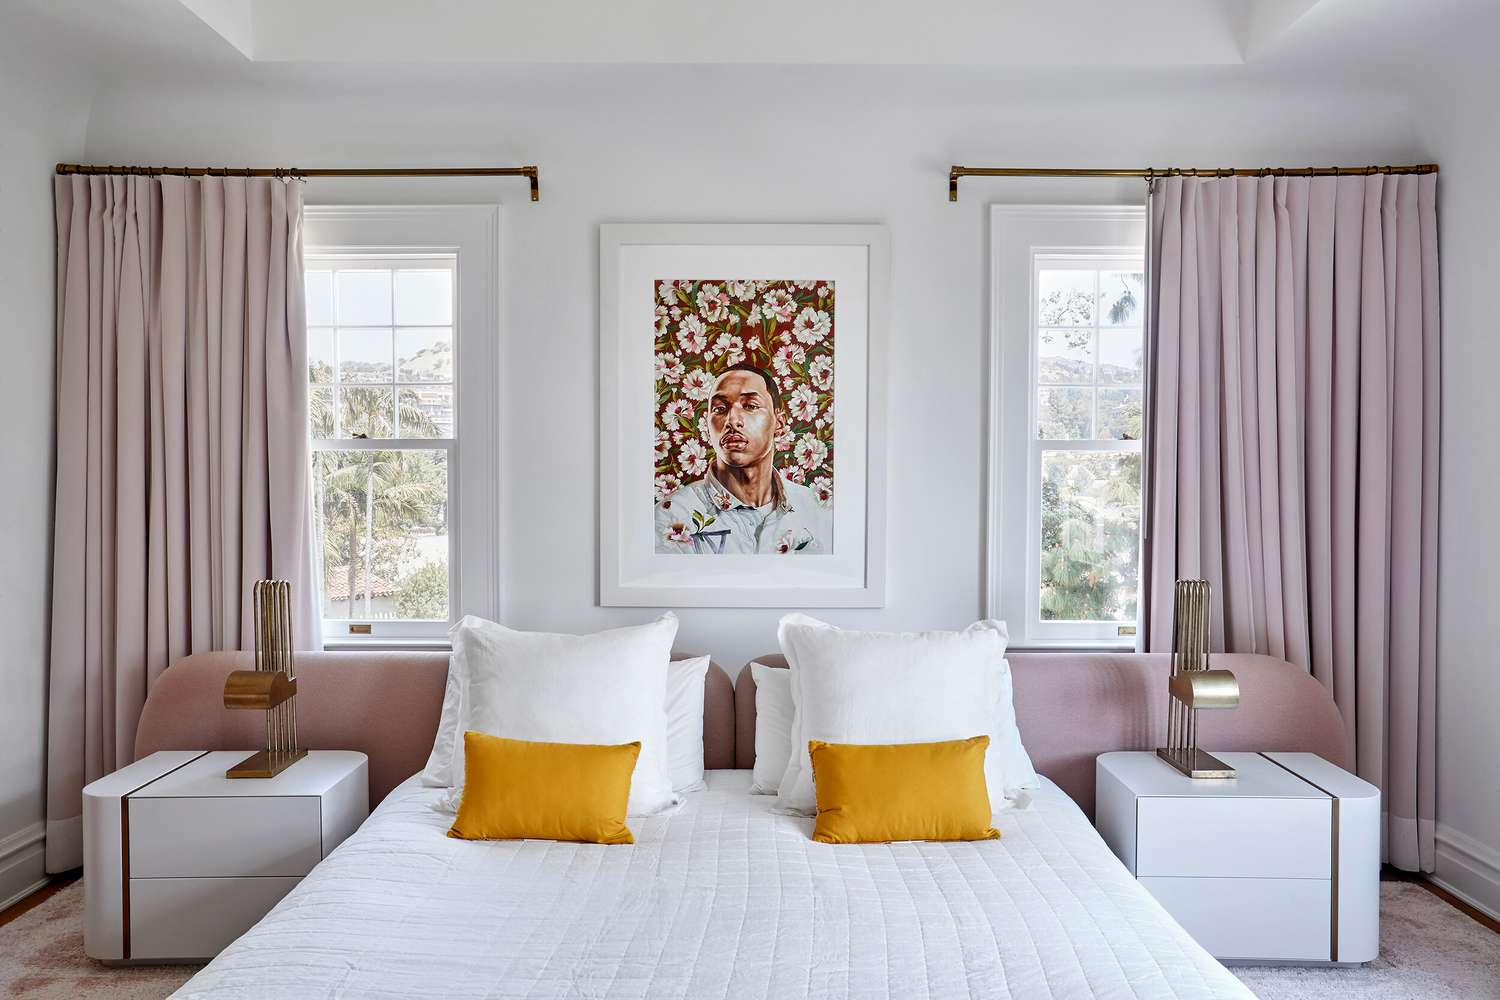 Minimalist bedroom artwork